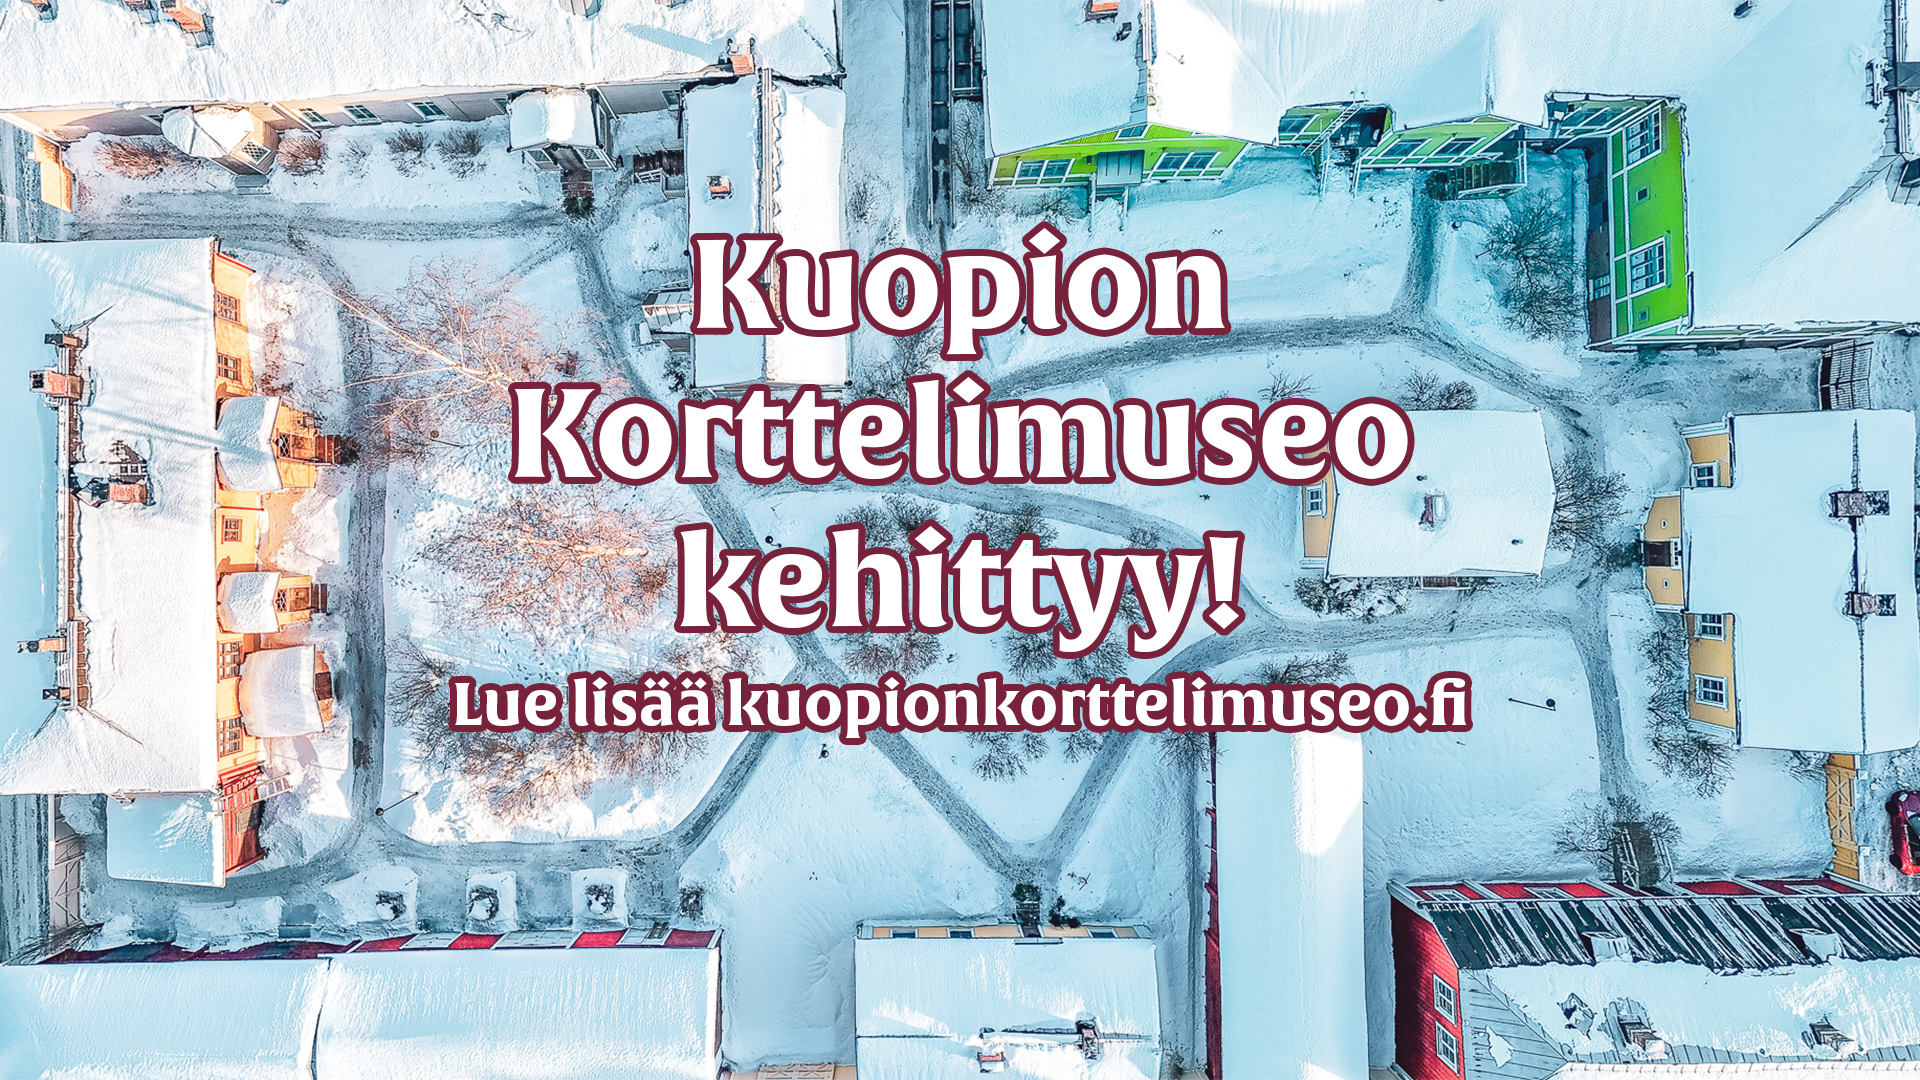 Kuopion korttelimuseo kehittyy